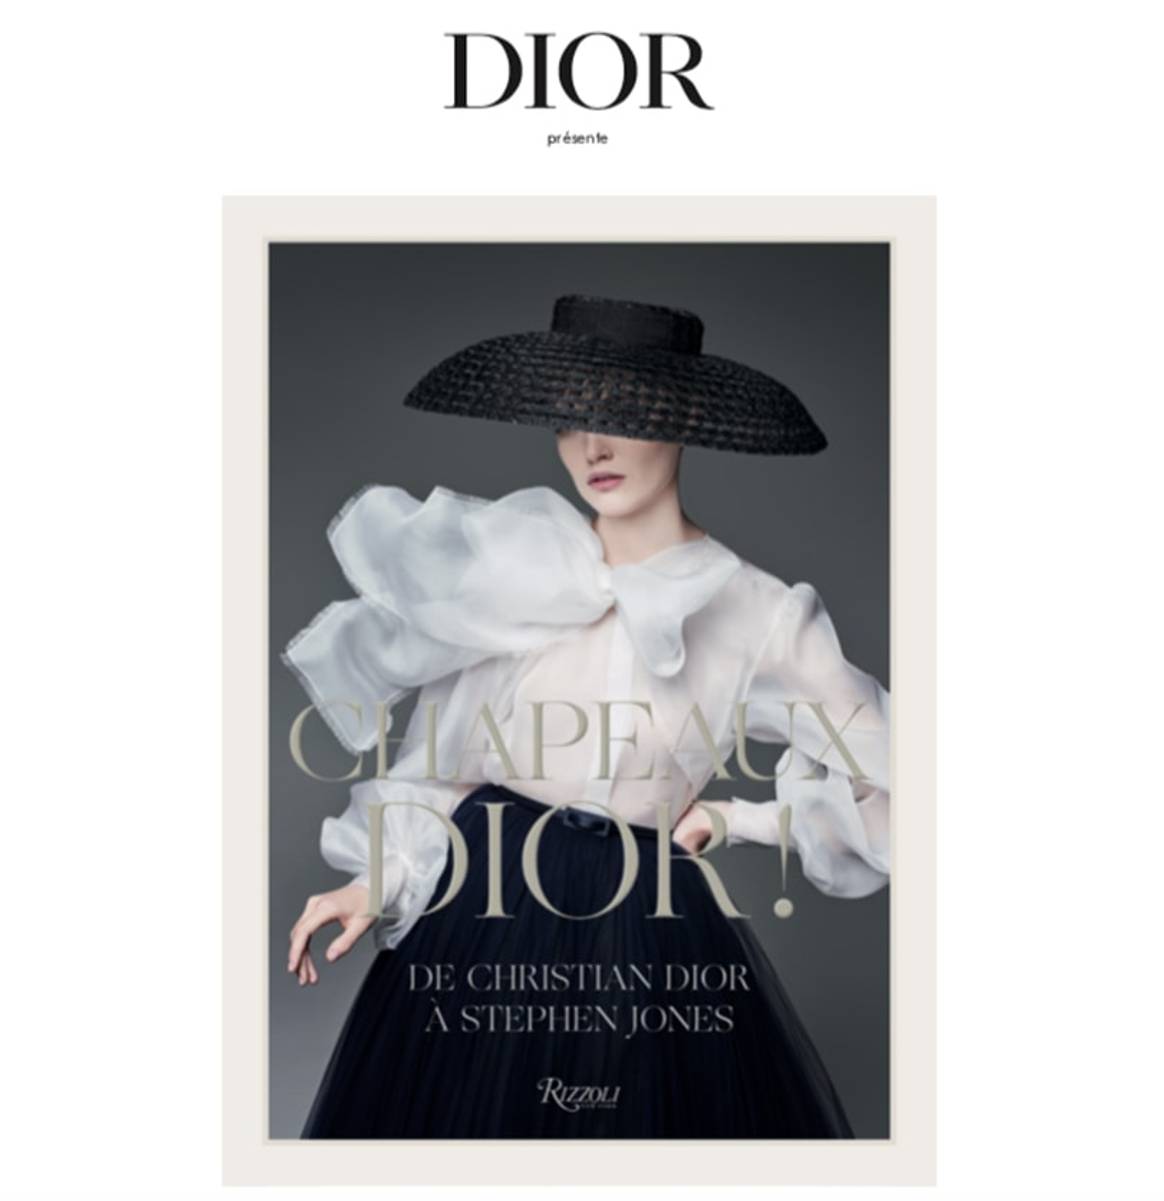 Dior publie un ouvrage dédié à ses collections de chapeaux